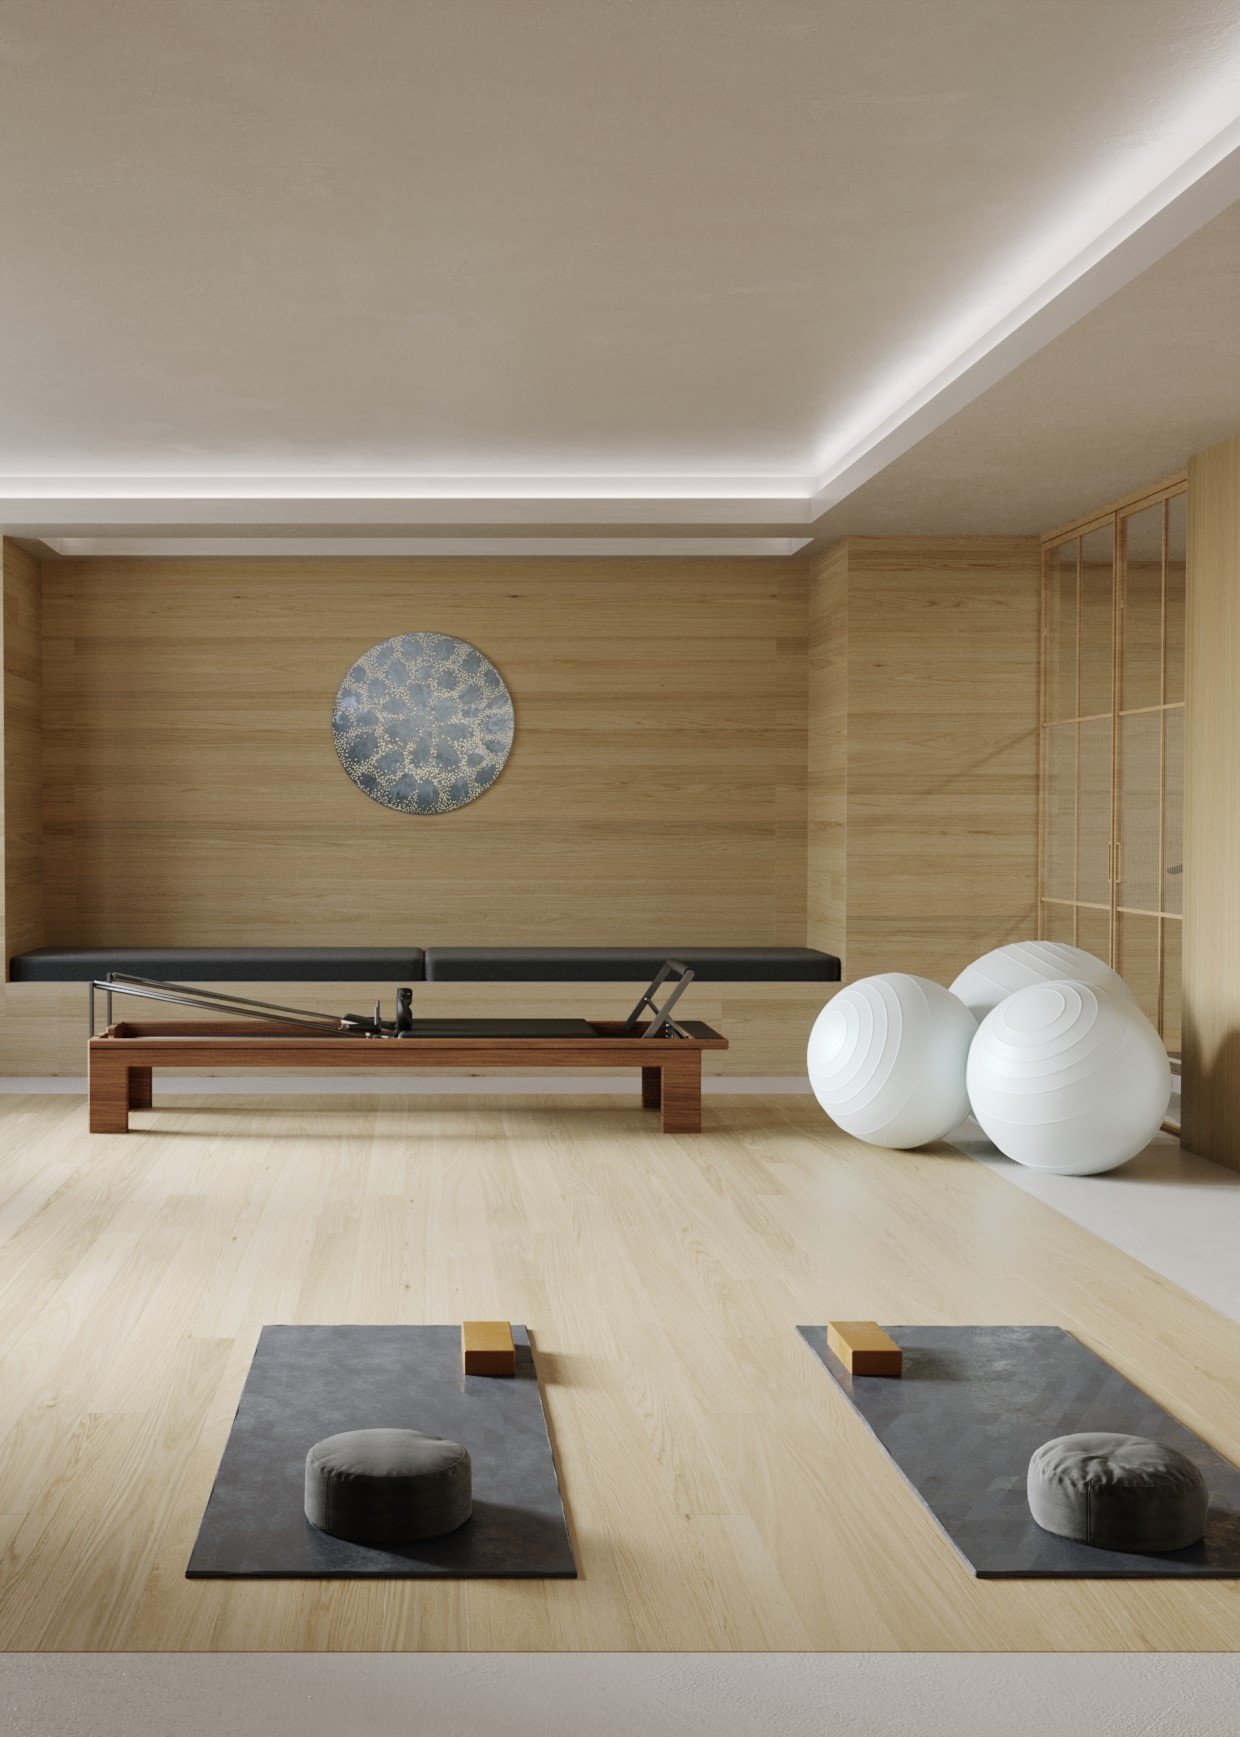 Interior of private home yoga studio, buddhist style